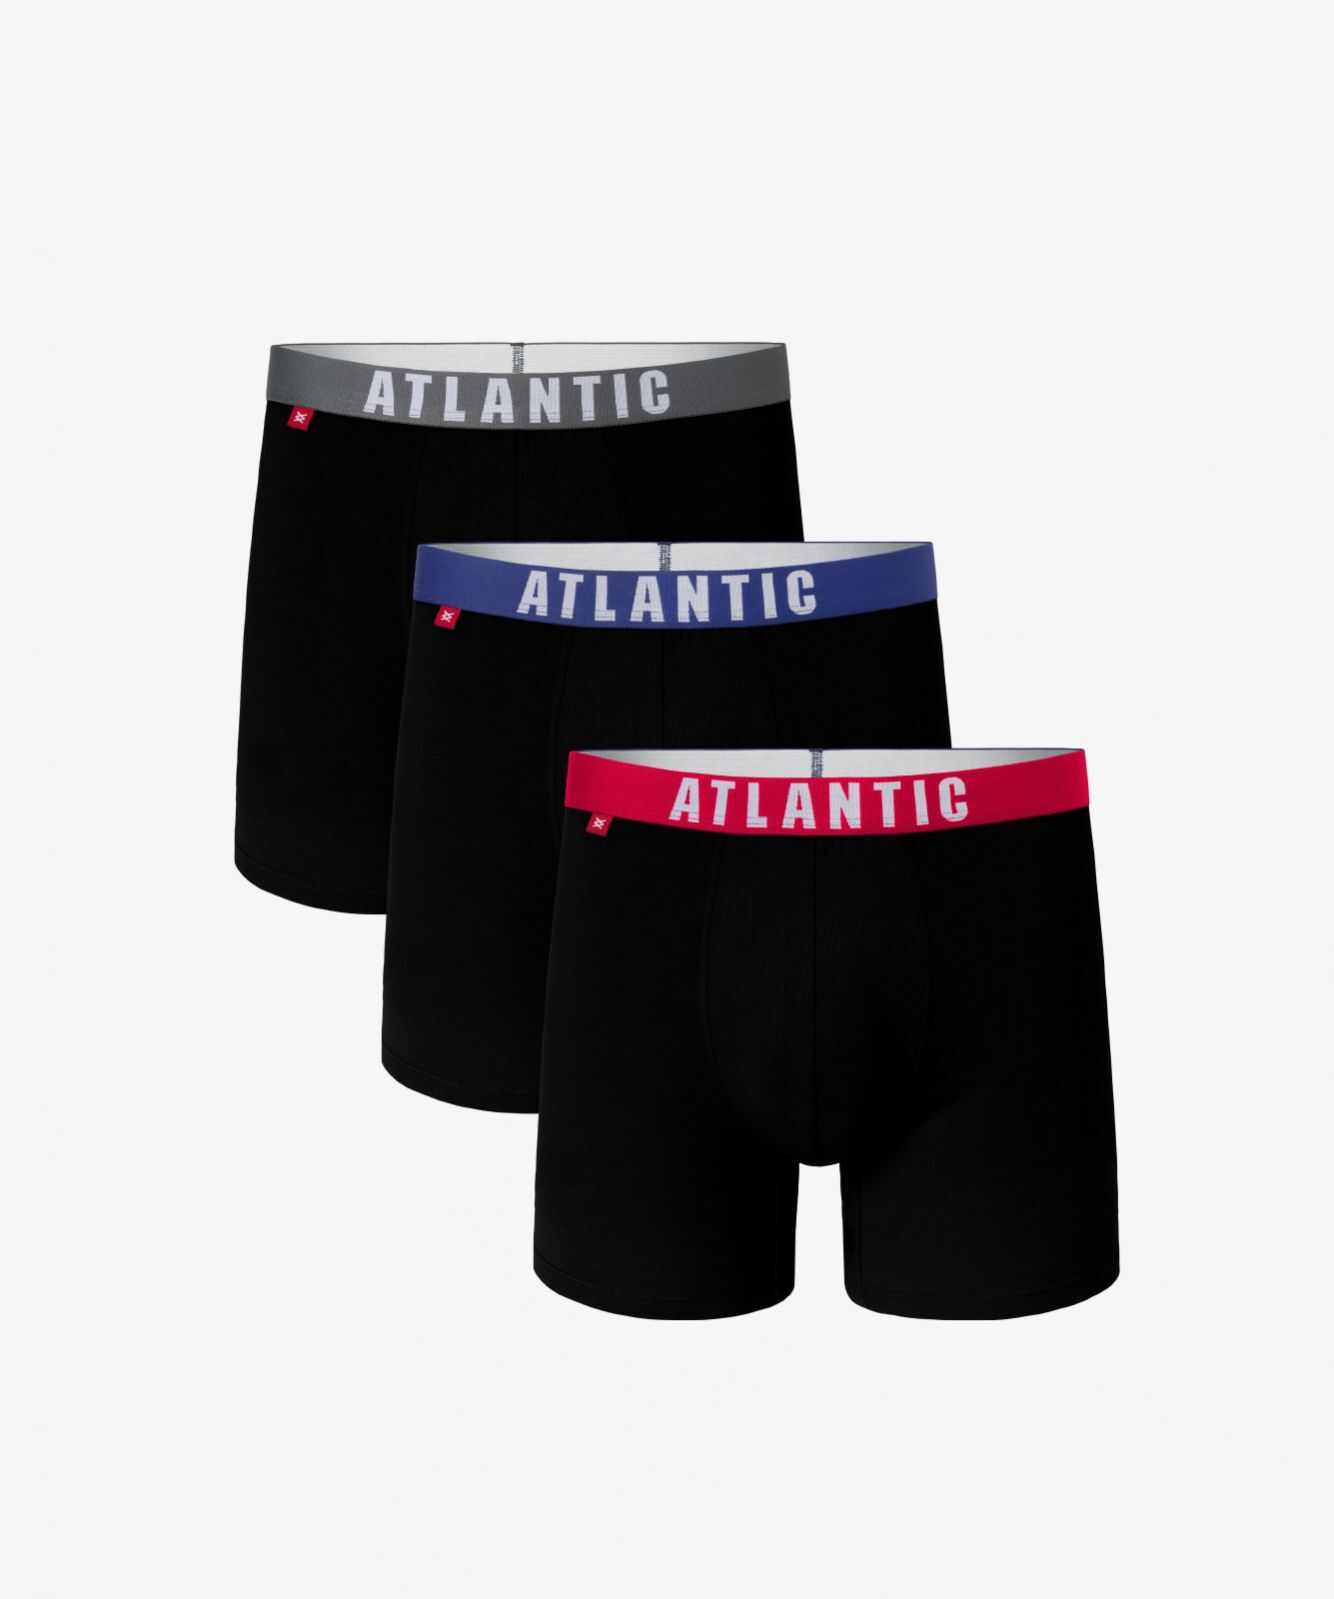 Мужские трусы шорты удлиненные Atlantic, набор 3 шт., хлопок, черные, 3MH-037